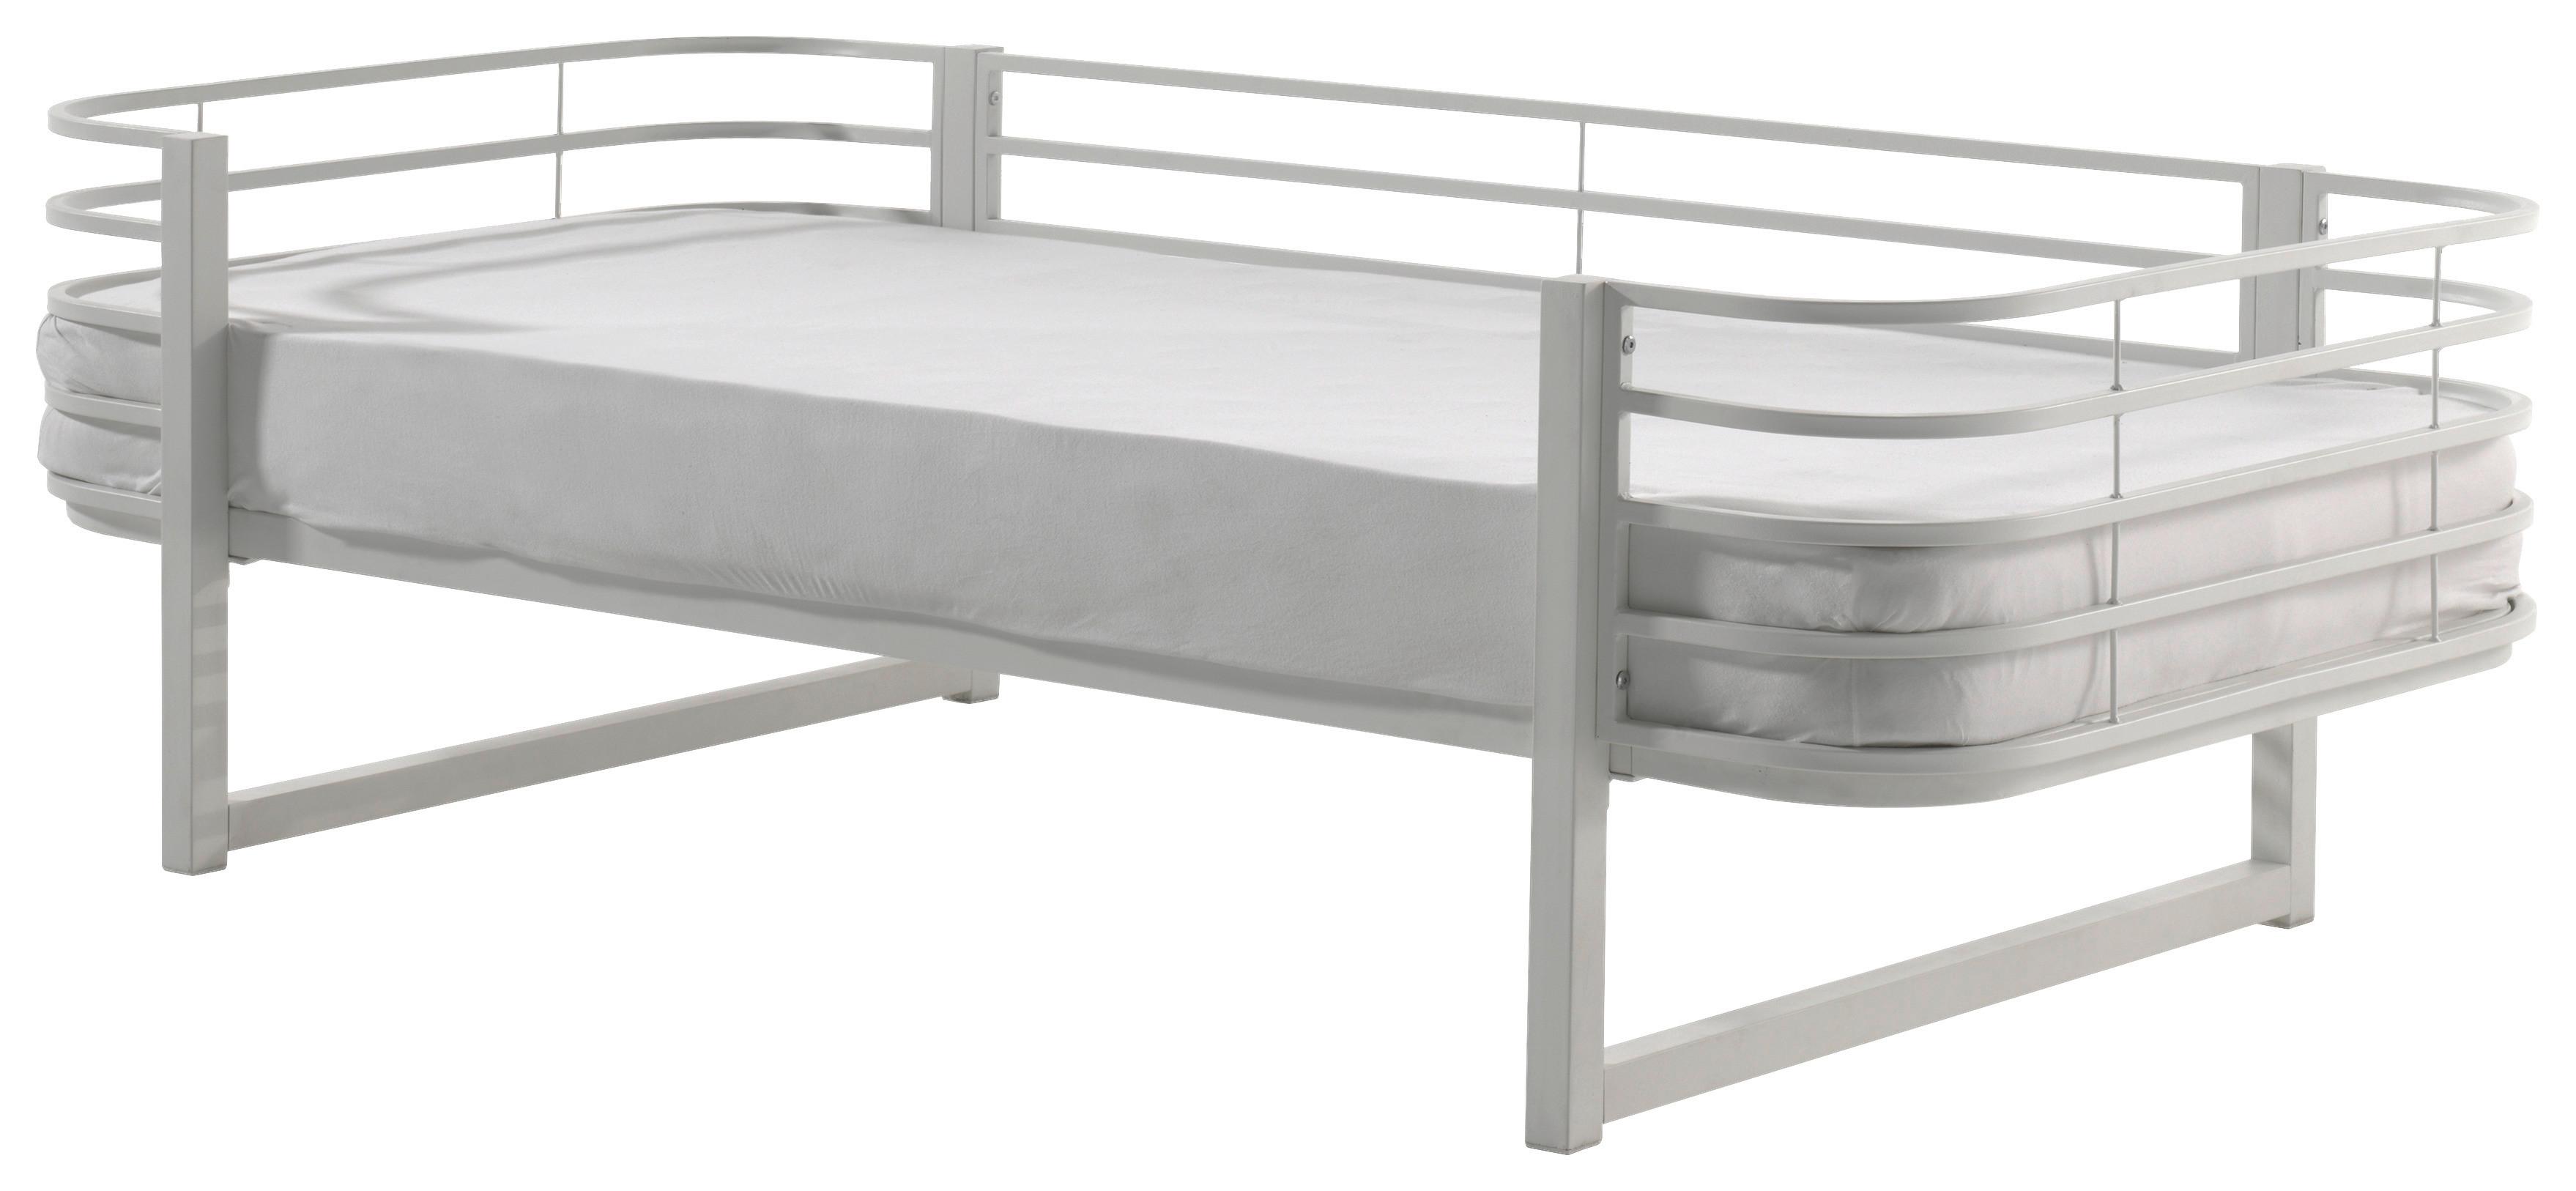 Kinderbett Oscar 90x200 cm Eisen Weiß Mit Sicherung - Weiß, Natur, Metall (90/200cm) - MID.YOU